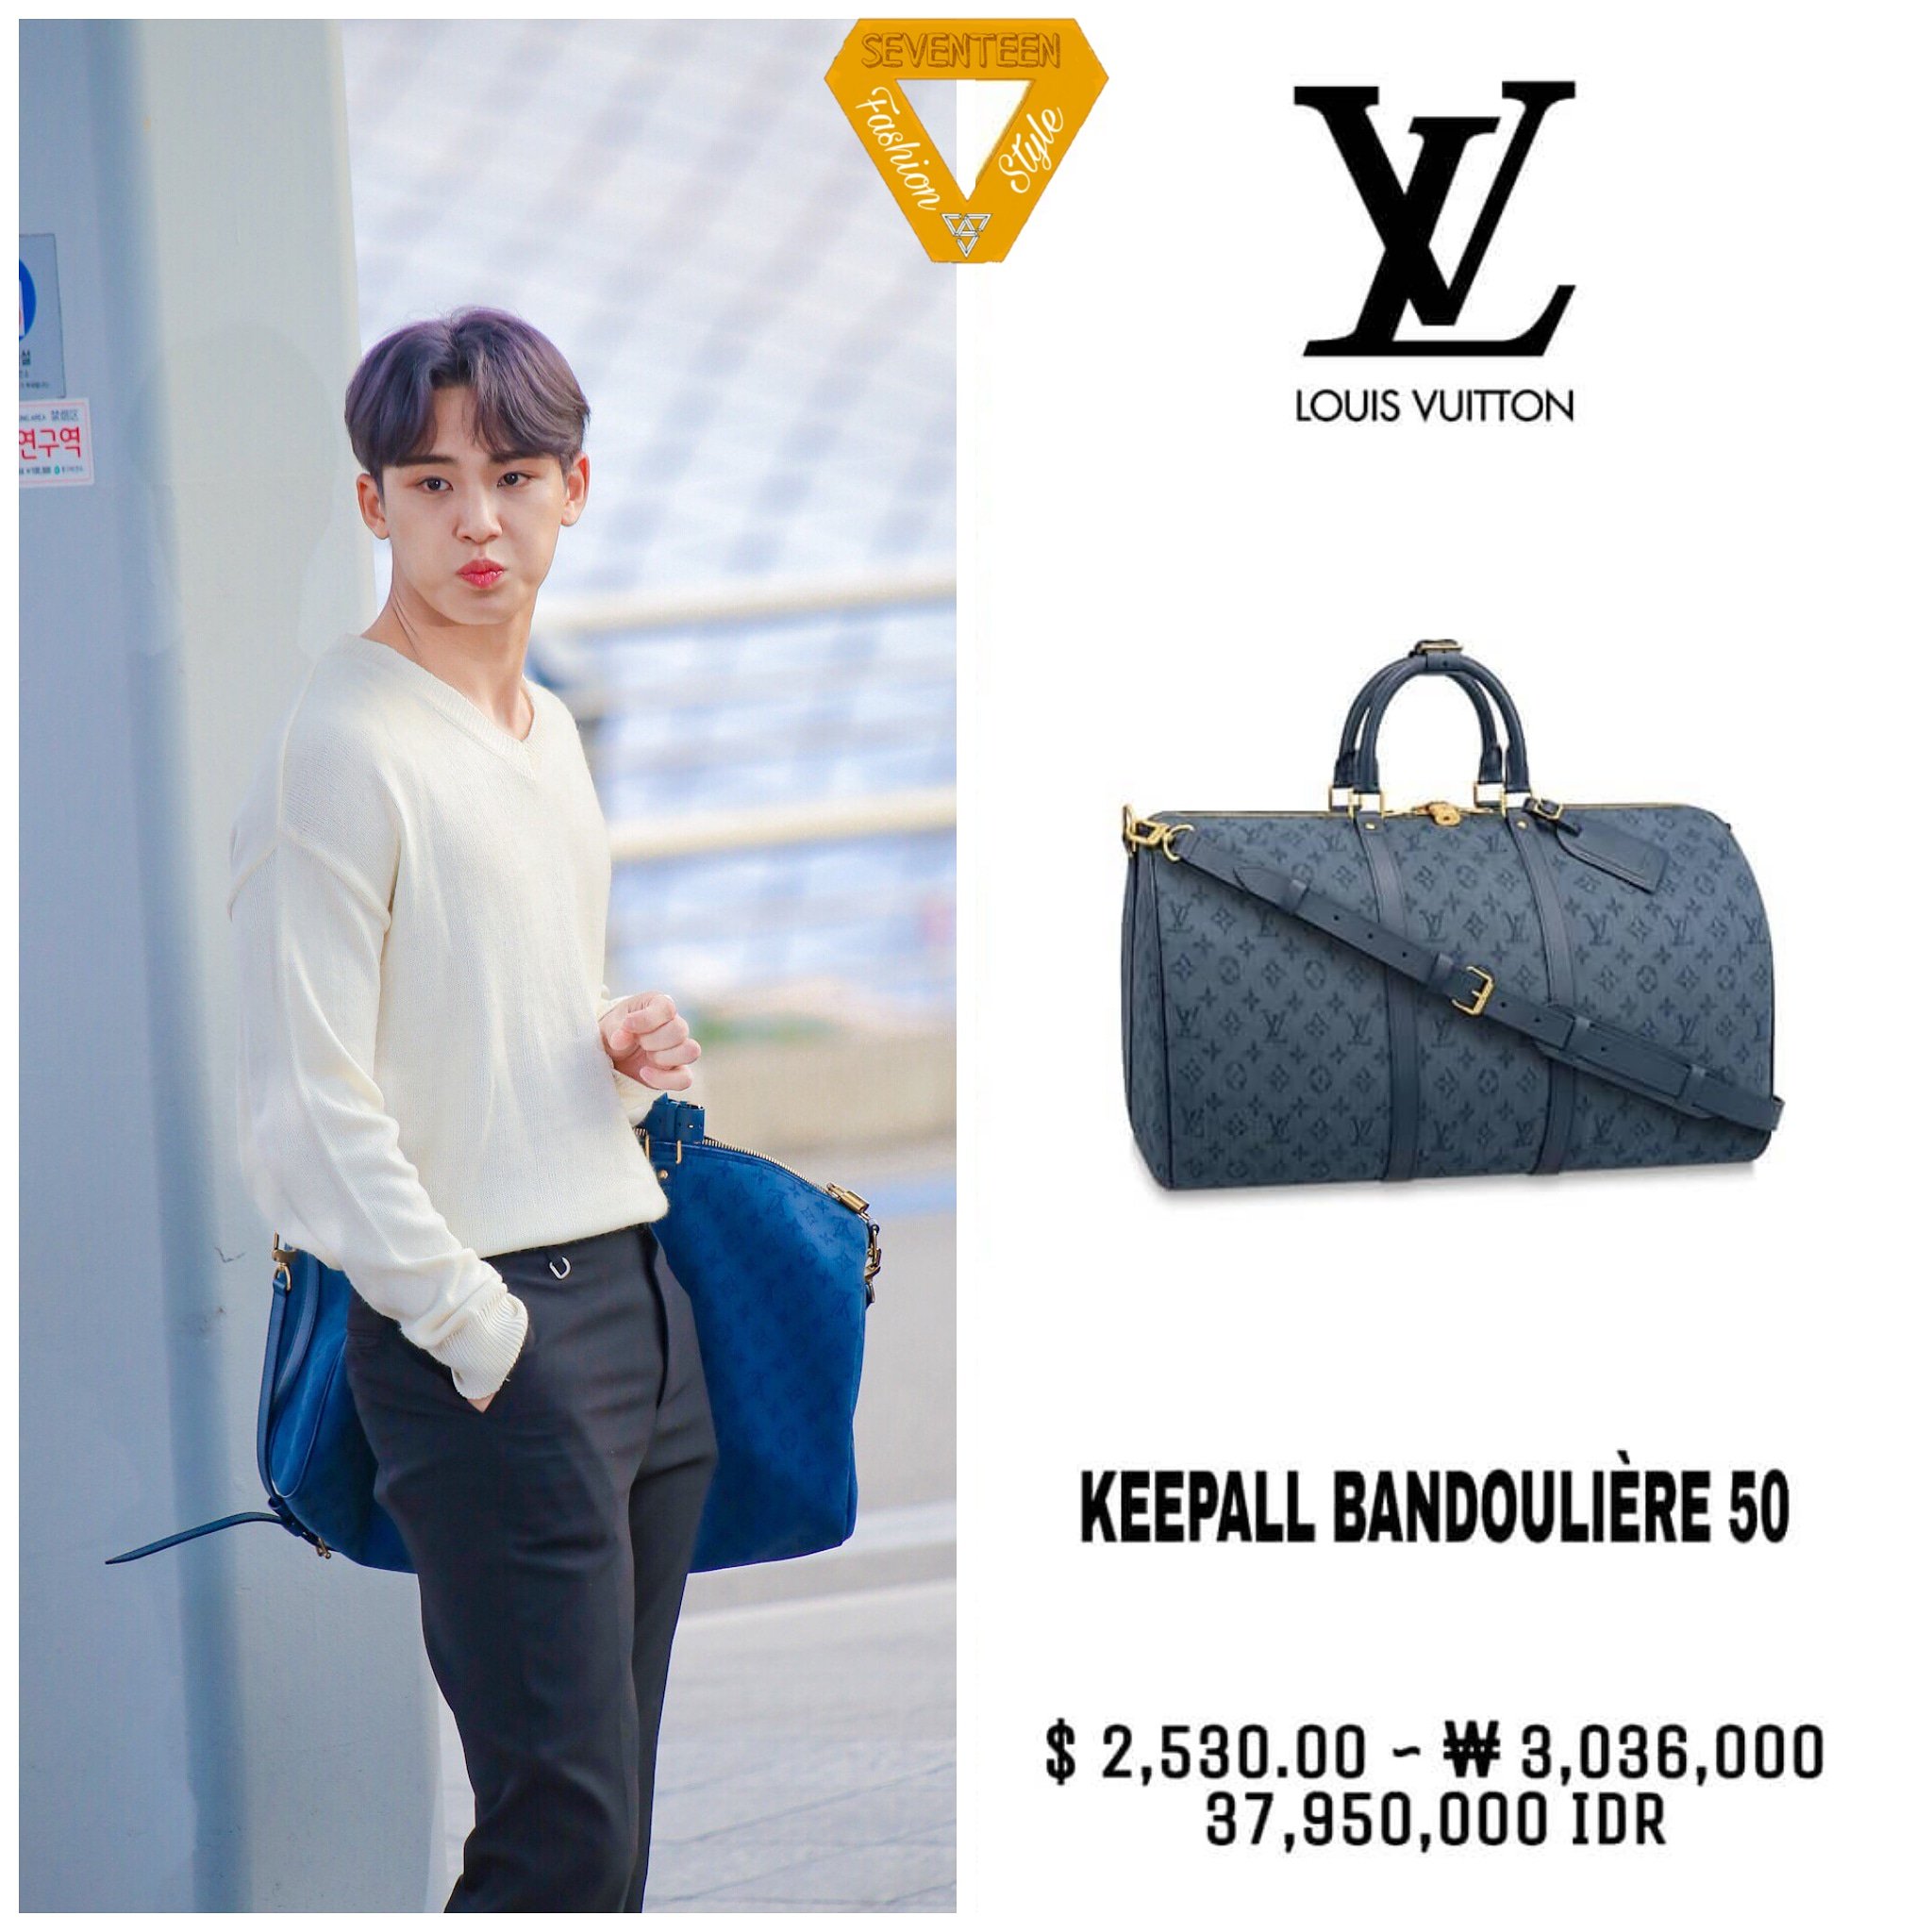 Louis Vuitton – Fashion Eye Seoul - We Folk